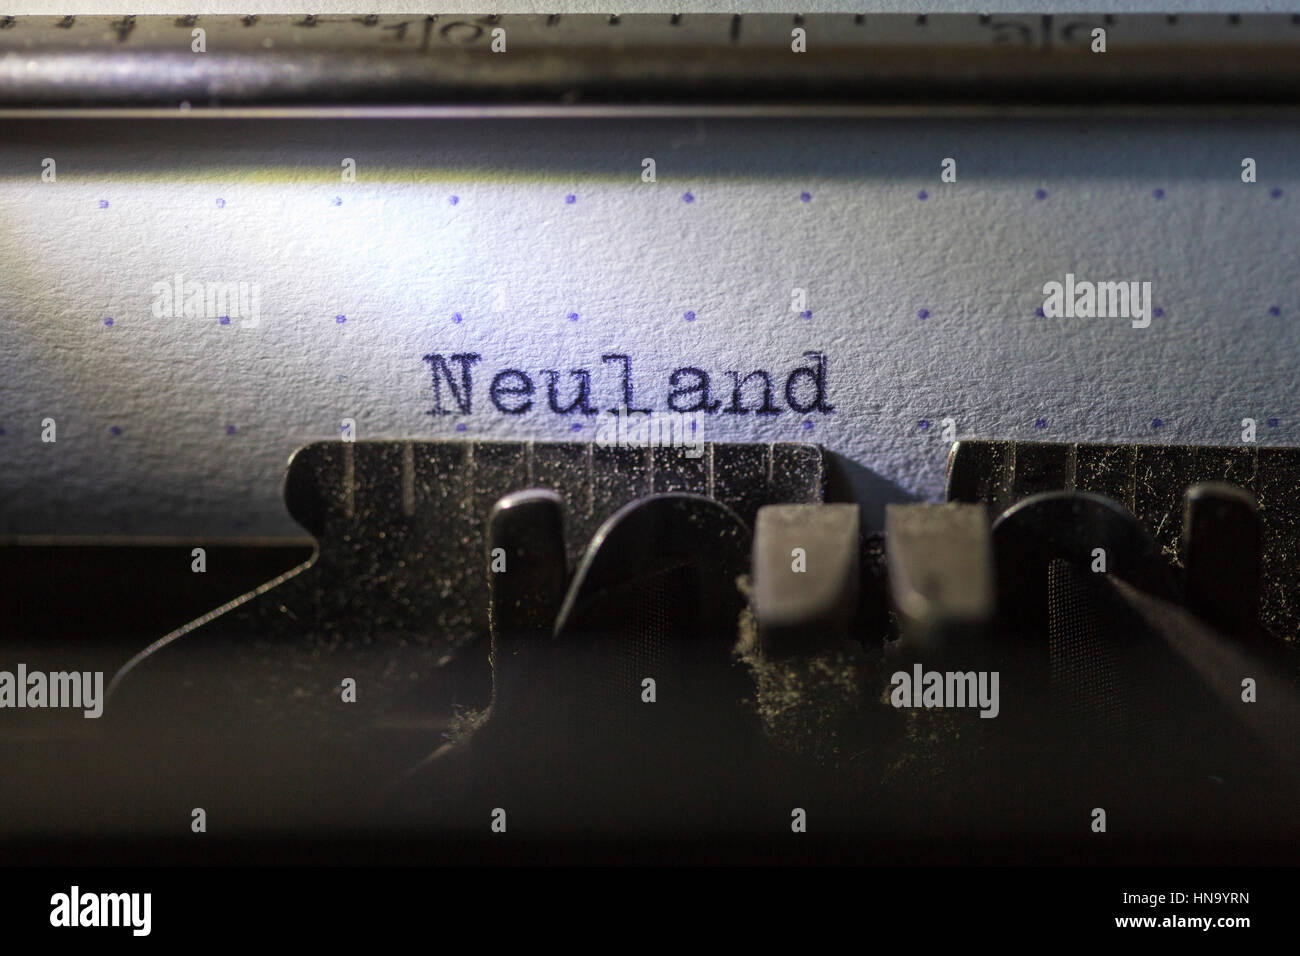 Neuland mot tapé sur vieille machine à écrire, Allemagne Banque D'Images